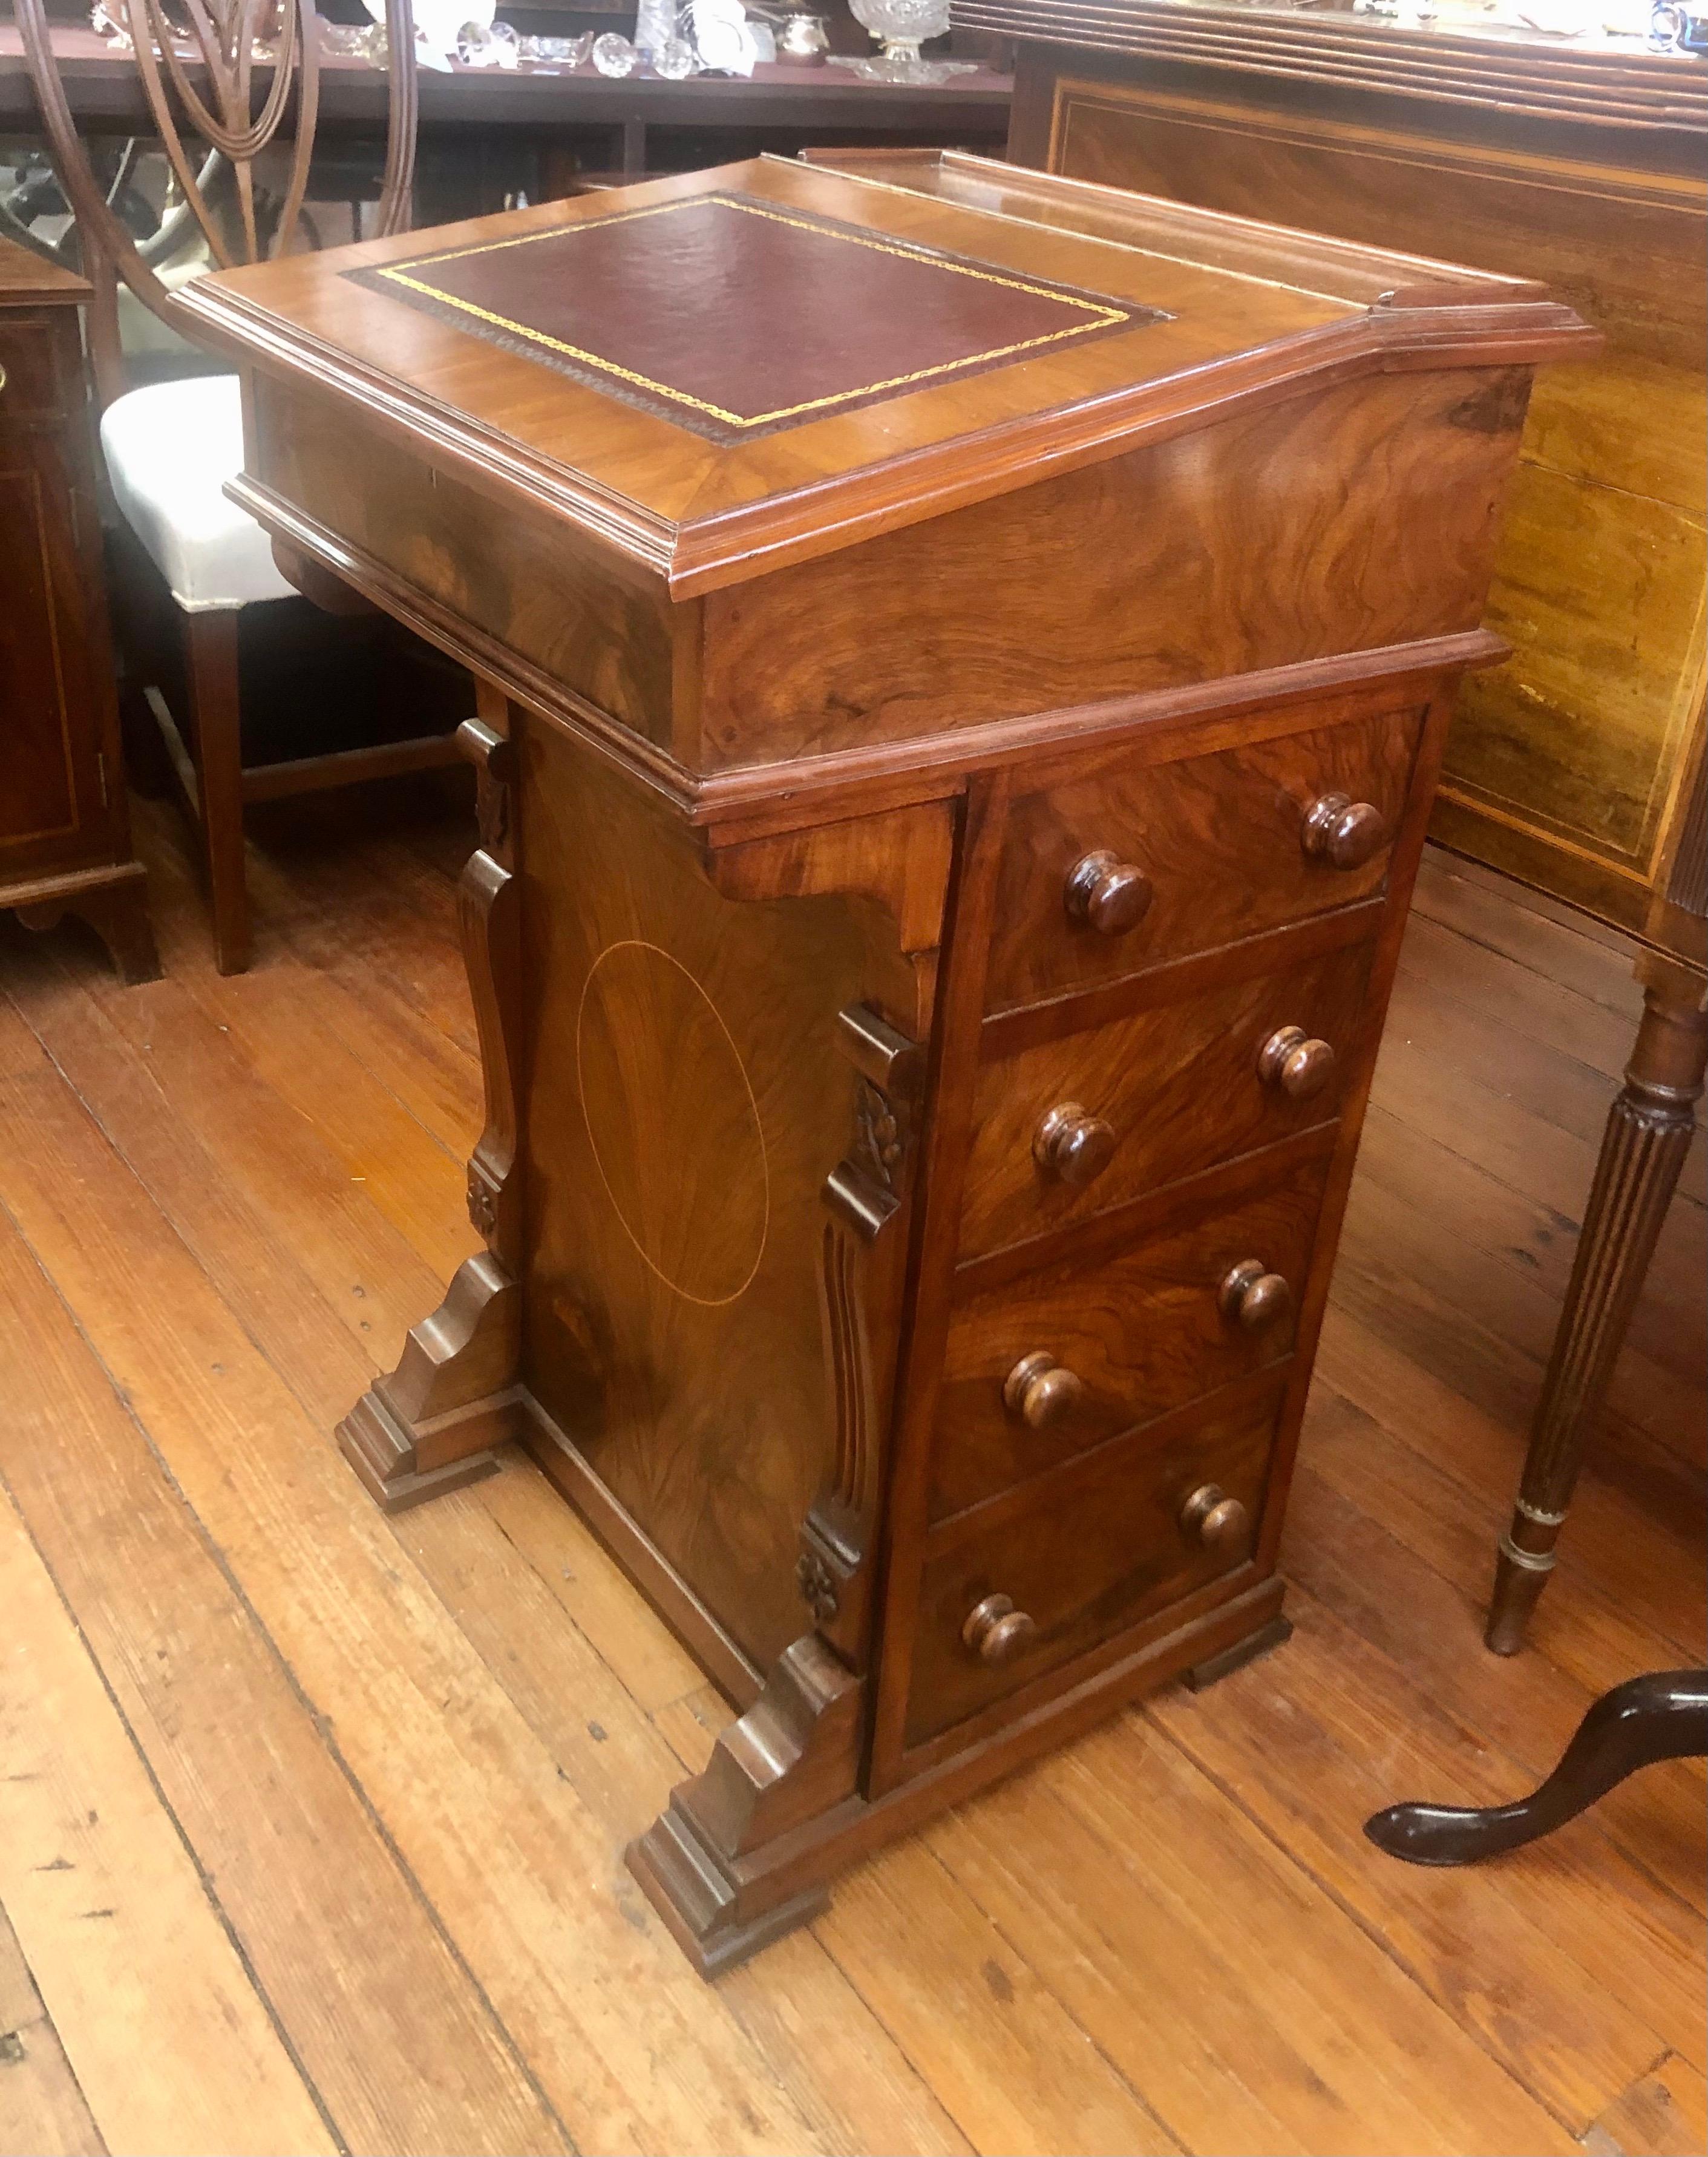 Hochwertiger, antiker englischer Schreibtisch aus Wurzelnuss mit eingelegter Lederplatte. Die Platte lässt sich hochklappen und gibt den Blick auf eine Reihe von kleinen Schubladen frei. Das Äußere hat eine Bank von nützlichen Schubladen